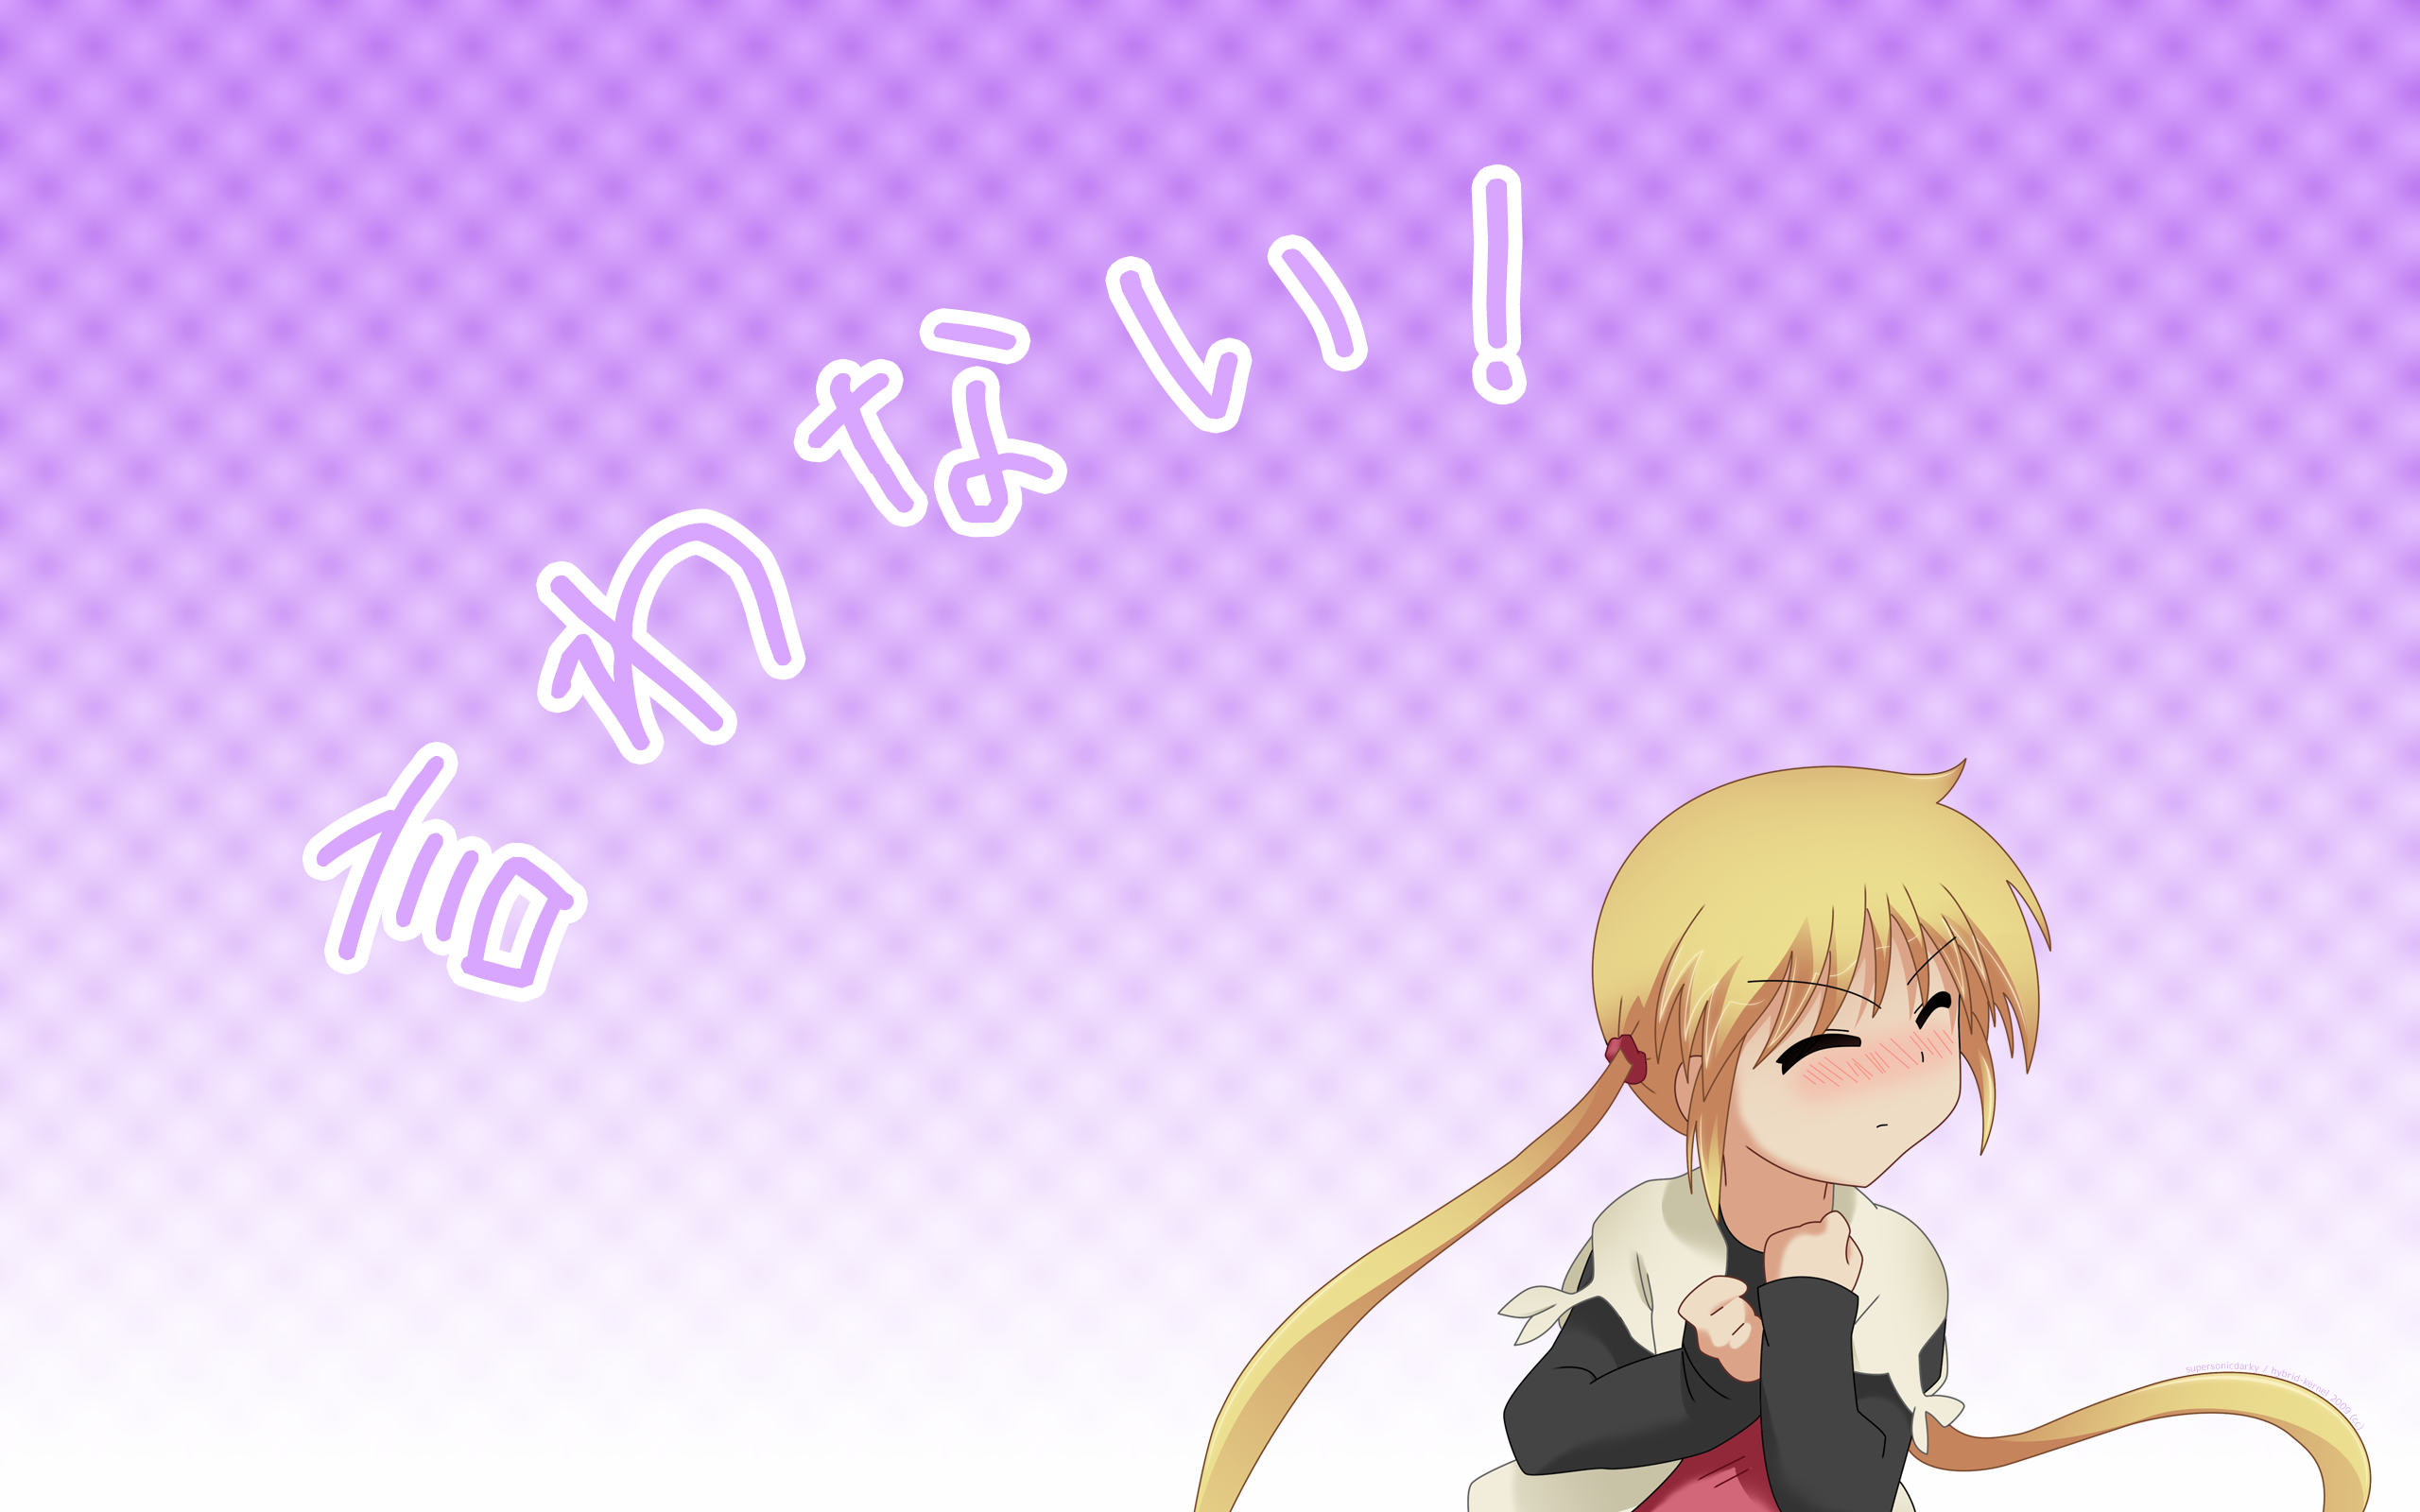 Hayate no Gotoku, anime - desktop wallpaper